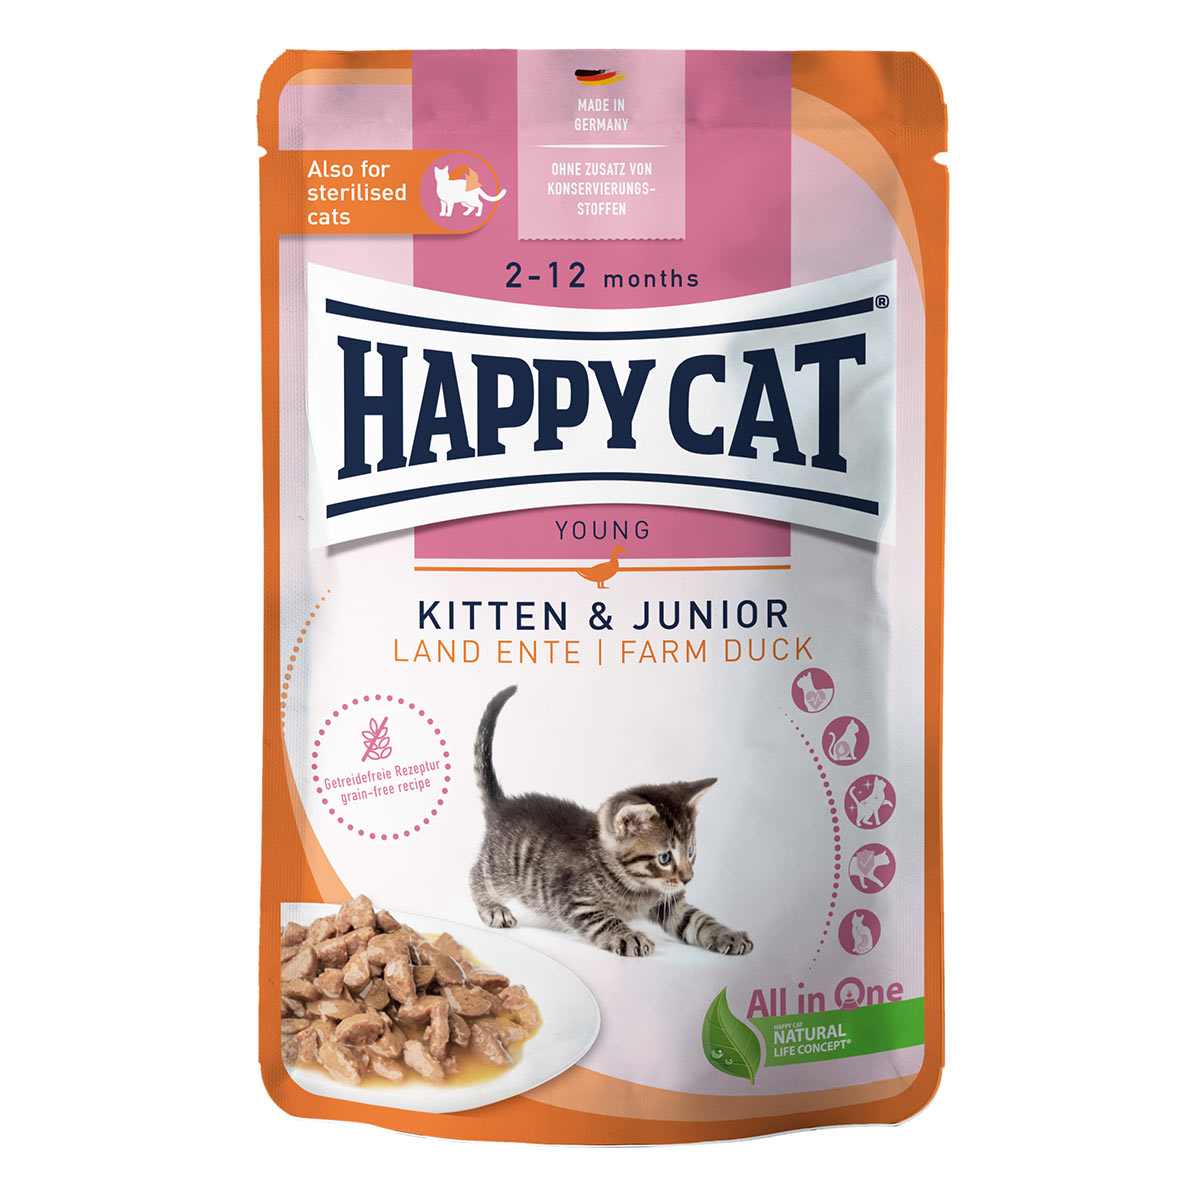 Happy Cat Tray Kitten & Junior Land Geflügel 12x85g